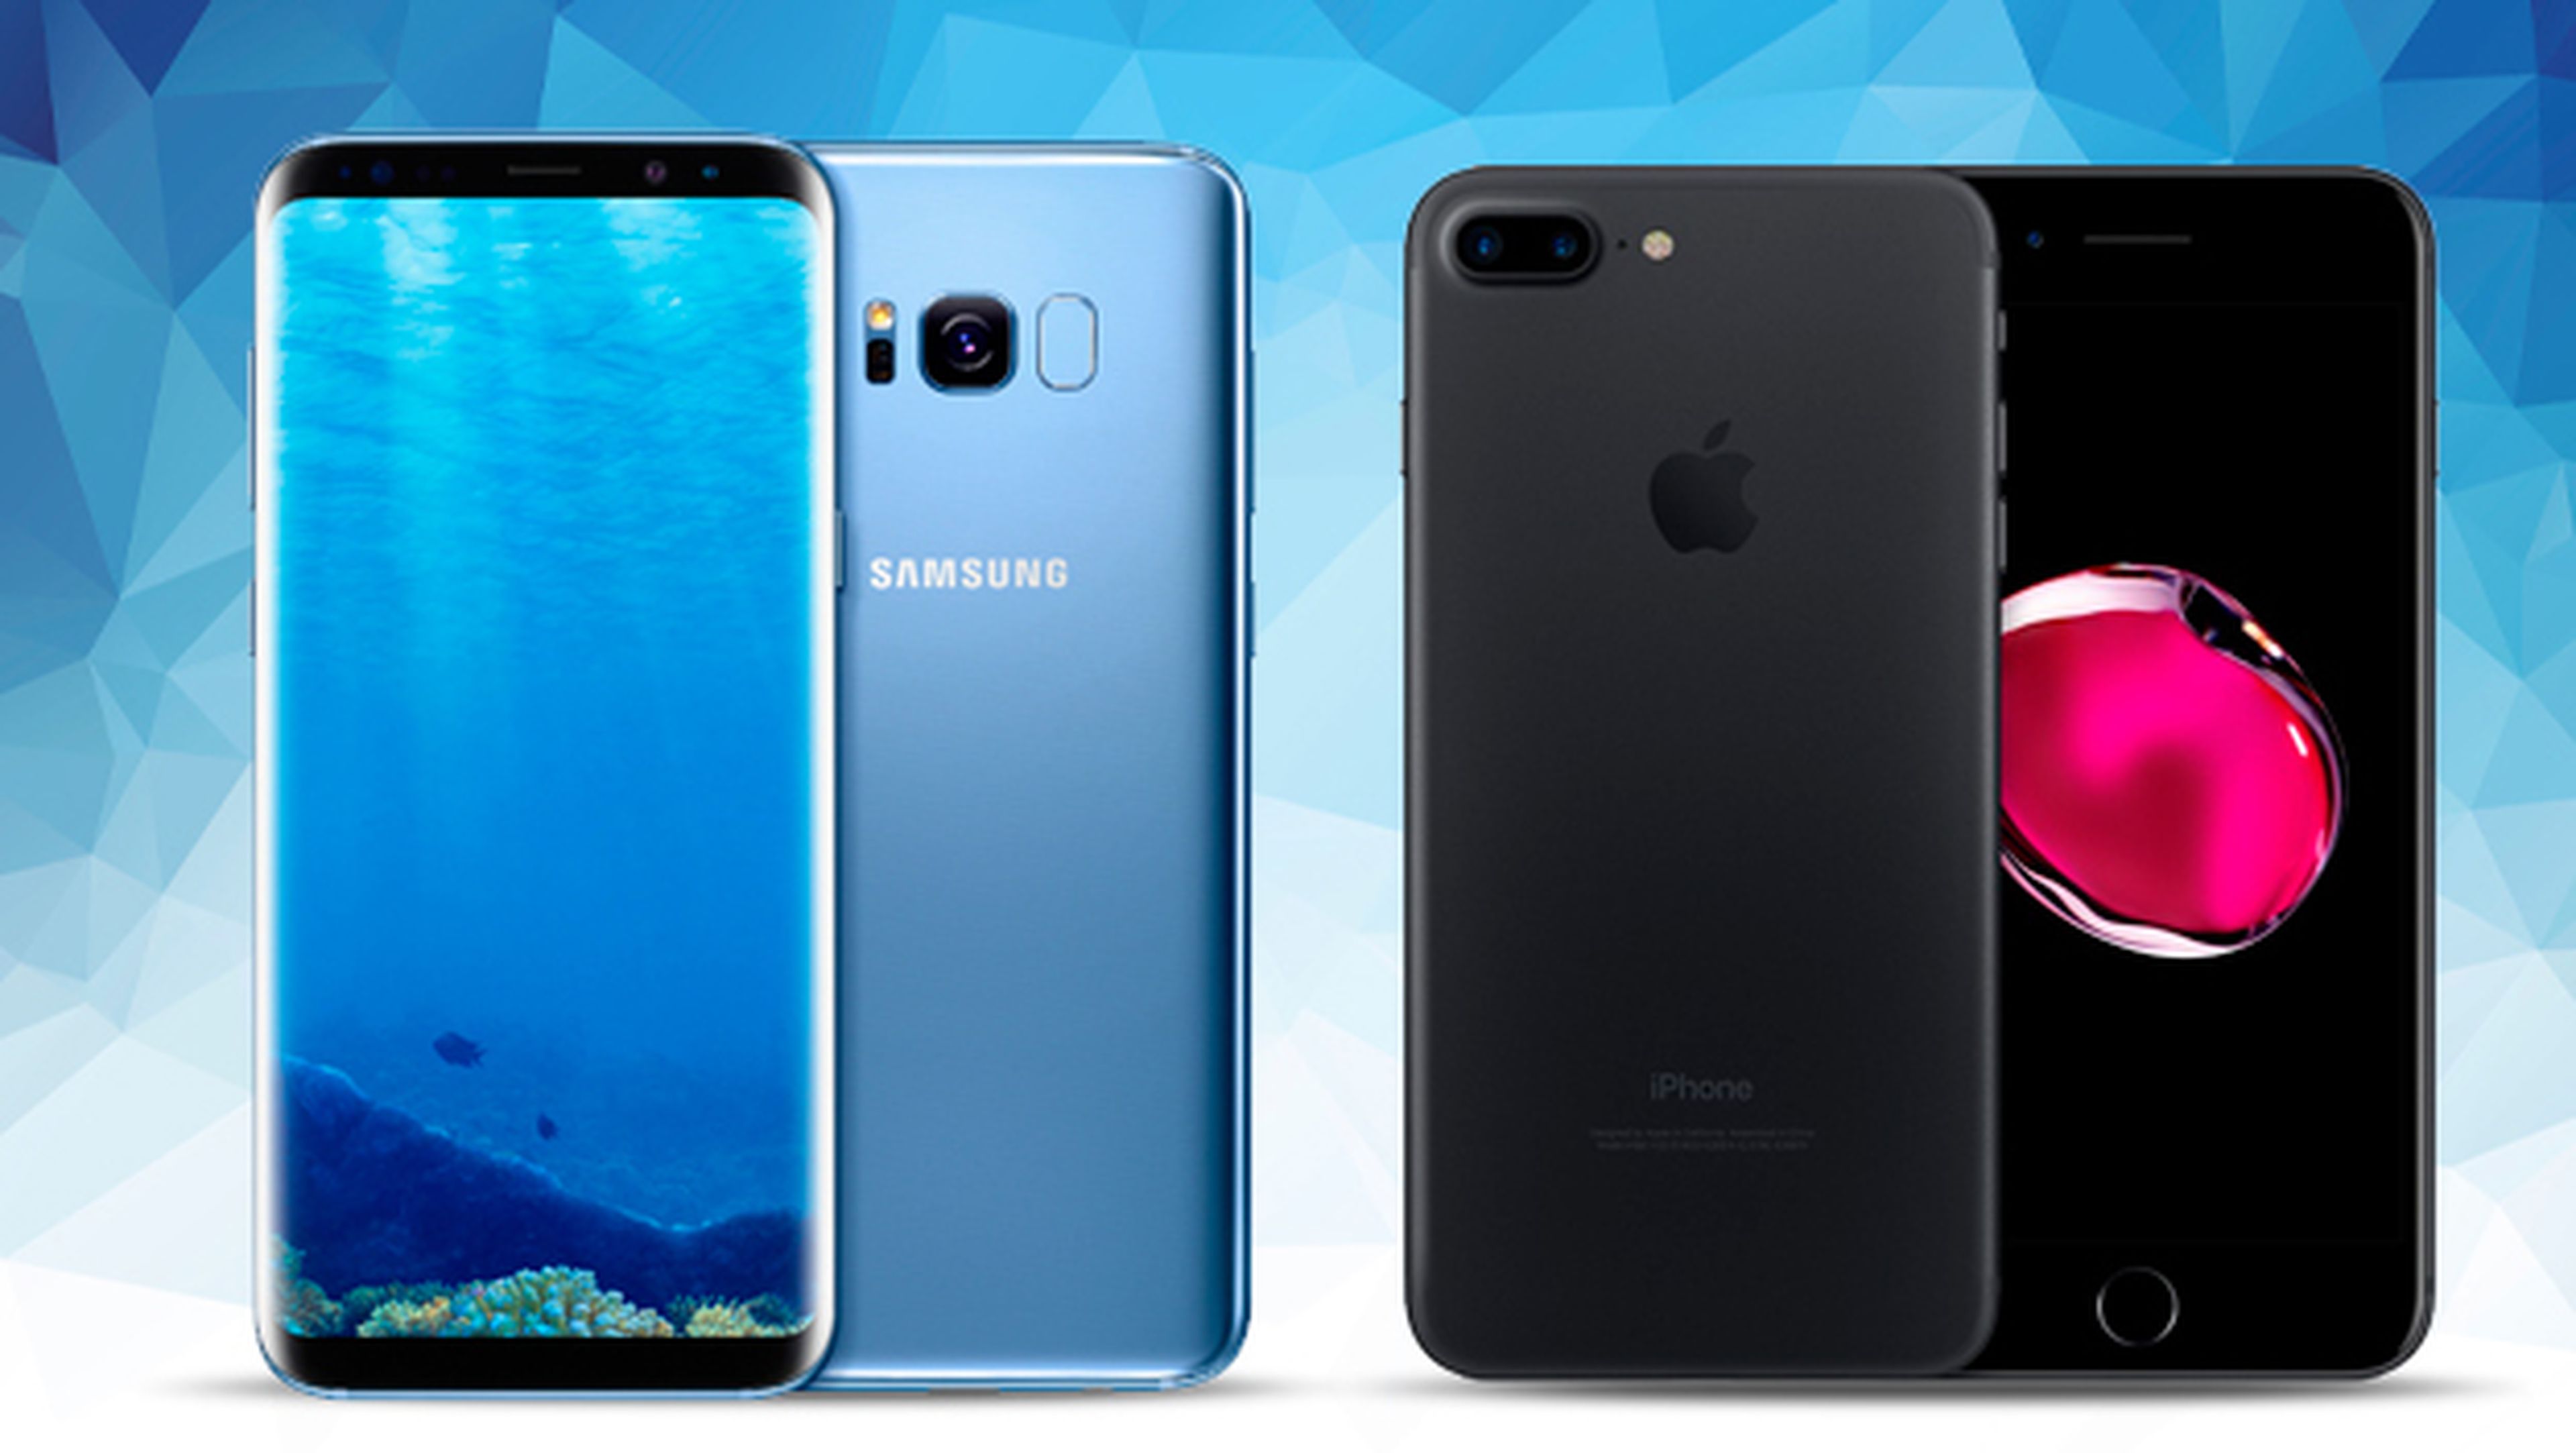 vino Competitivo Marketing de motores de búsqueda Samsung Galaxy S8 Plus o iPhone 7 Plus, ¿cuál es el mejor móvil? | Computer  Hoy